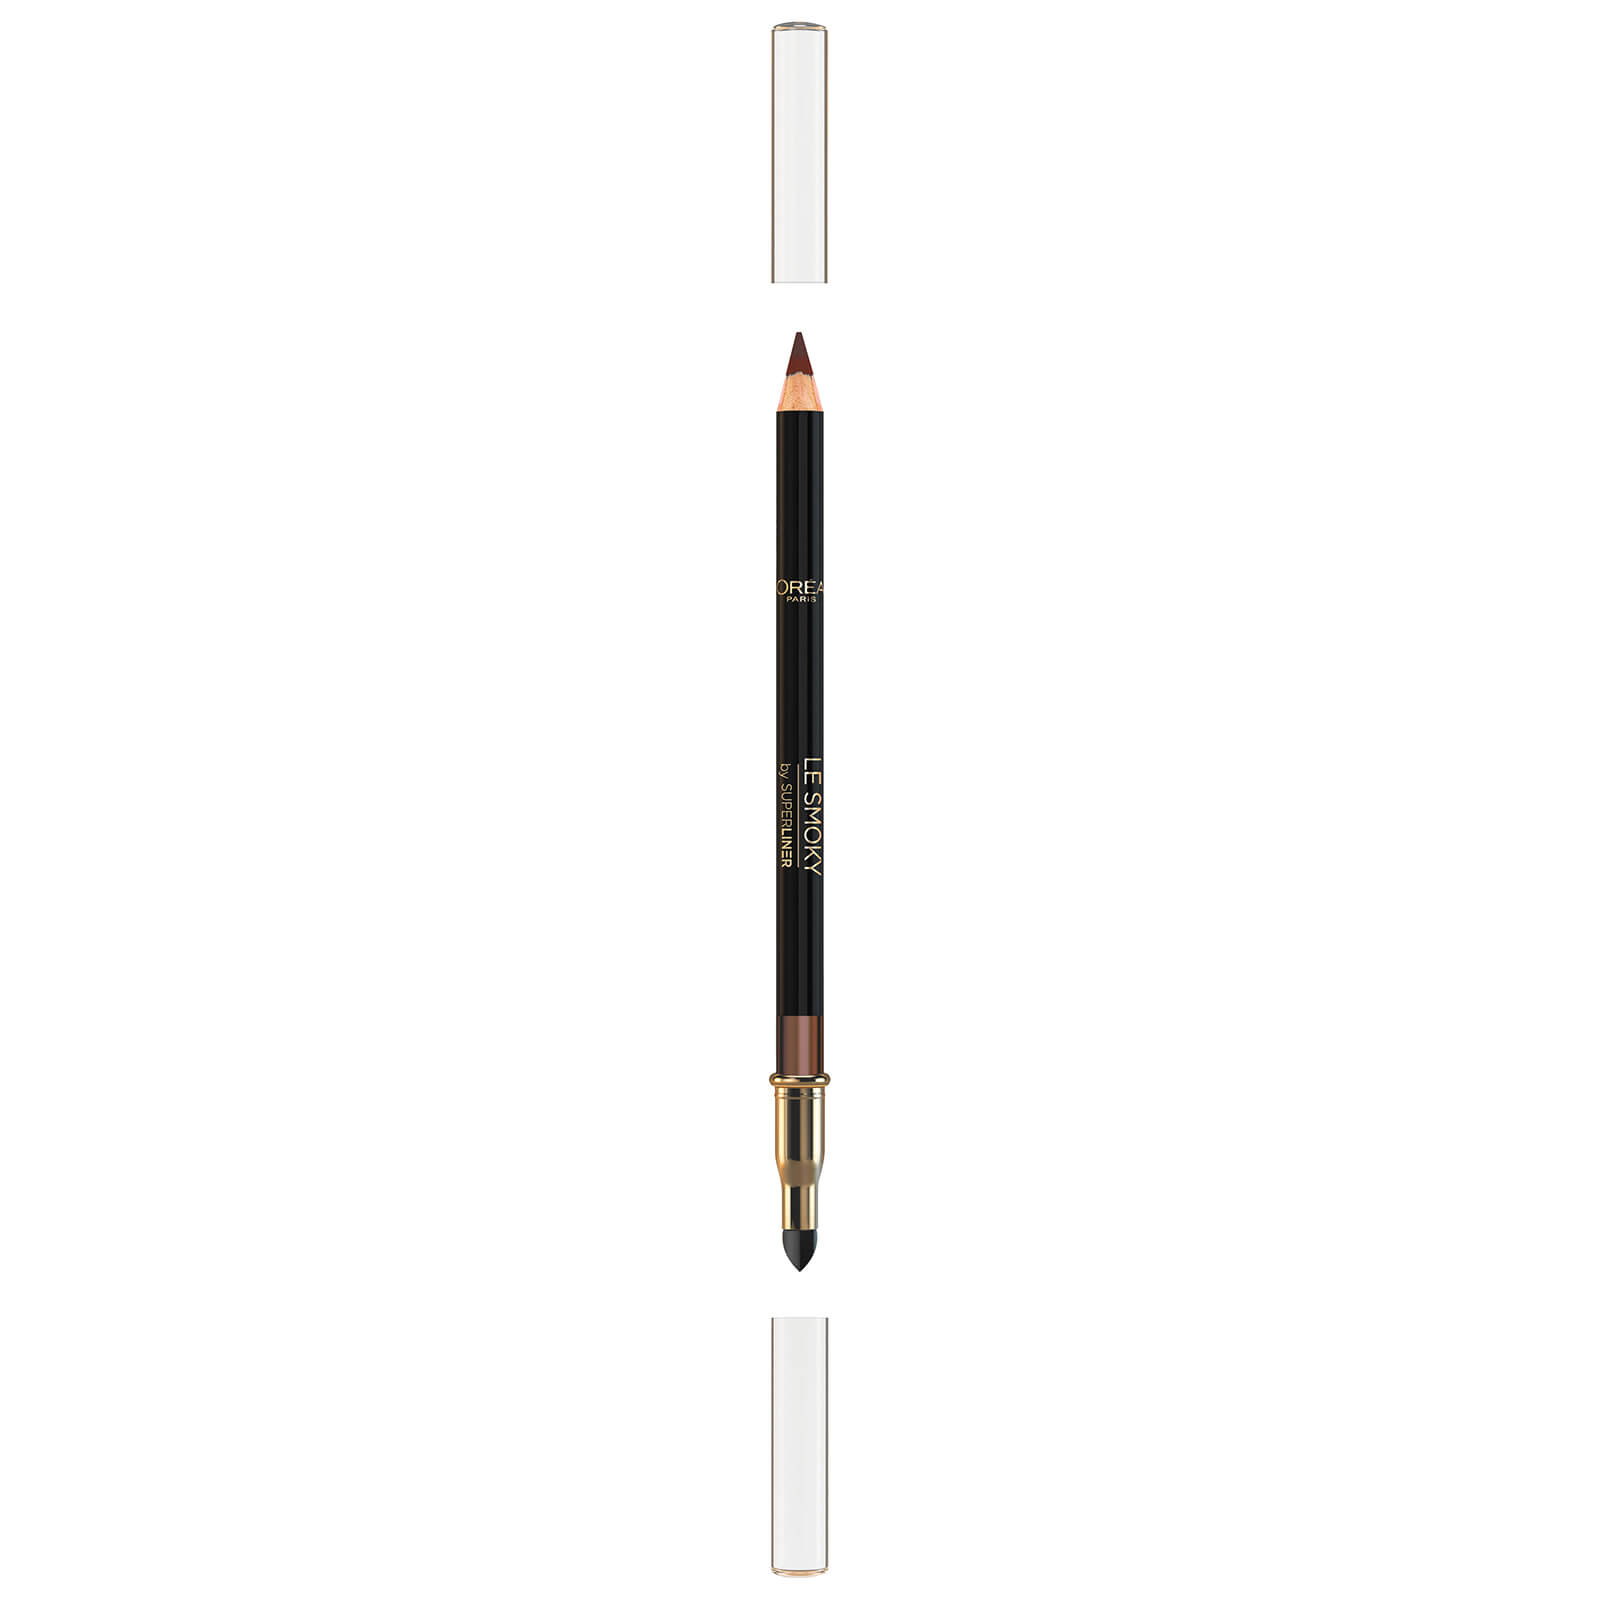 L’Oréal Paris L'Oréal Paris Le Smoky Eye Pencil 1g (Various Shades) - 204 Brown Fusion